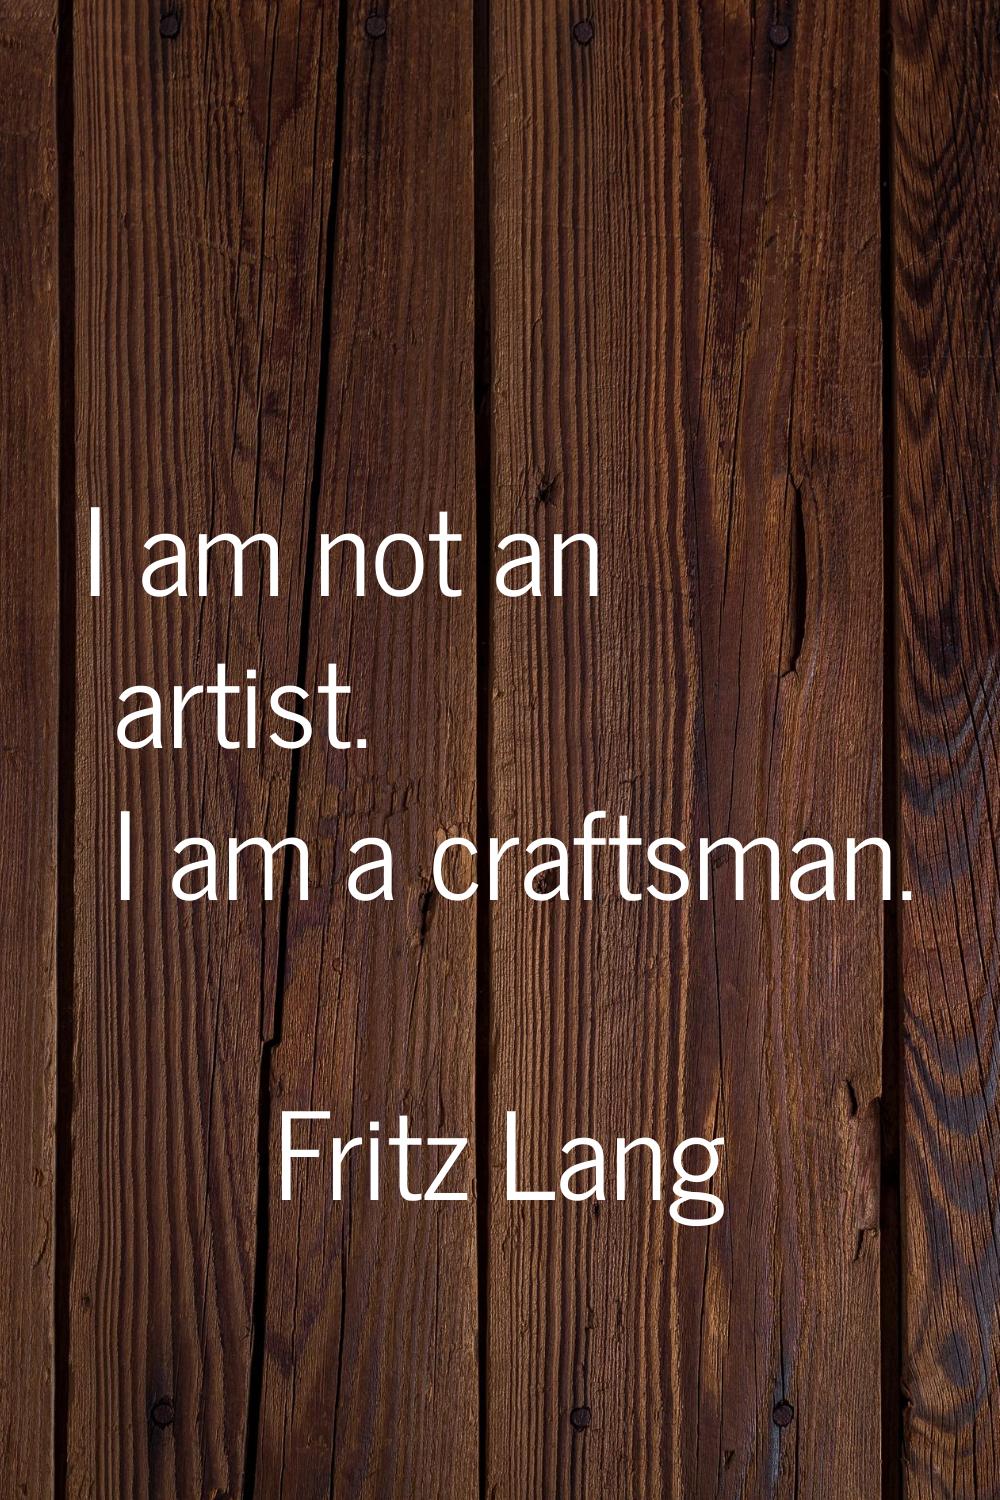 I am not an artist. I am a craftsman.